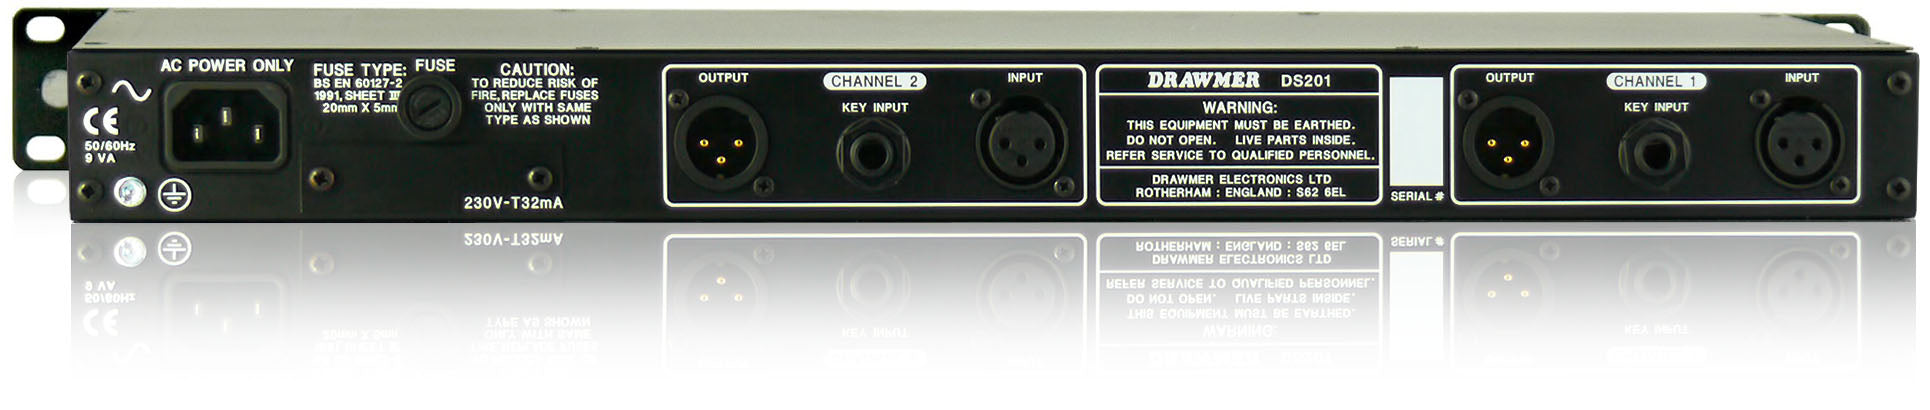 Drawmer DS201 - Dual Noise Gate